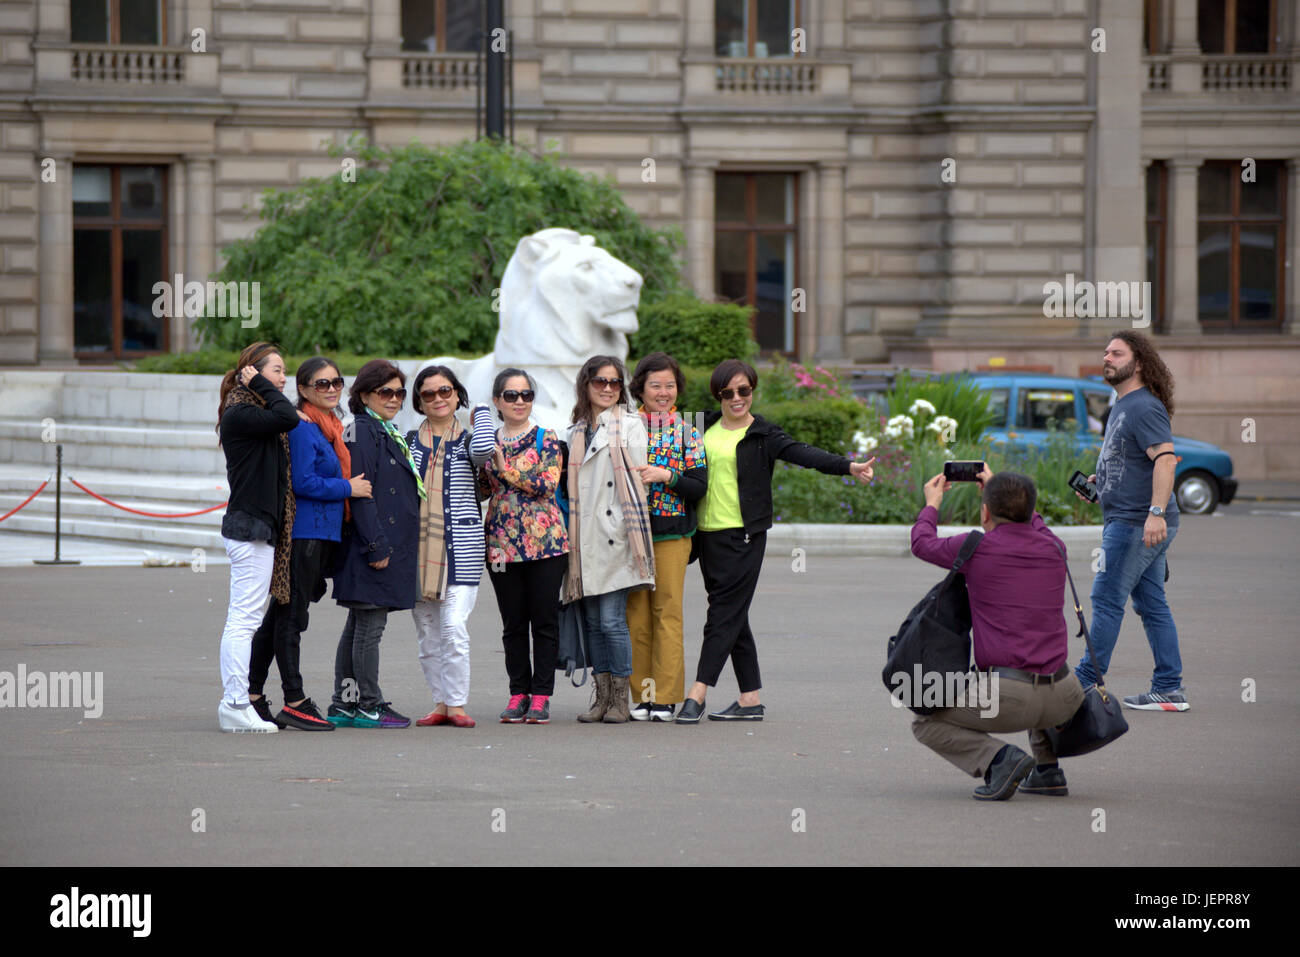 Asiatische Touristen in George Square Glasgow Schottland unter Selfies und Fotos vor allem chinesische und japanische Leute Stockfoto